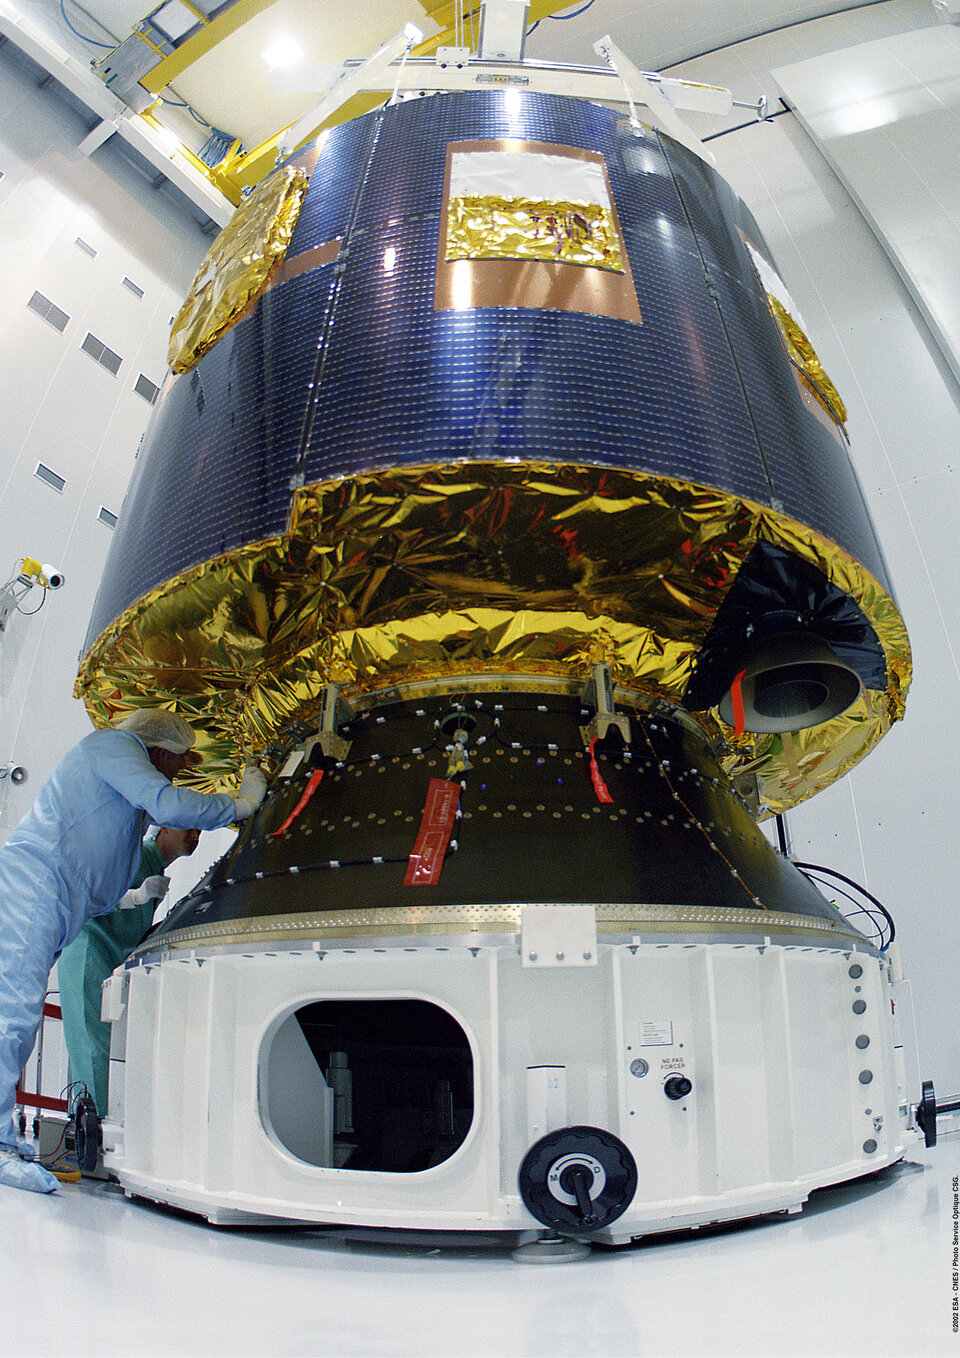 In de geostationaire baan draaien heel bijzondere satellieten, zoals de Europese weersatelliet Meteosat 8